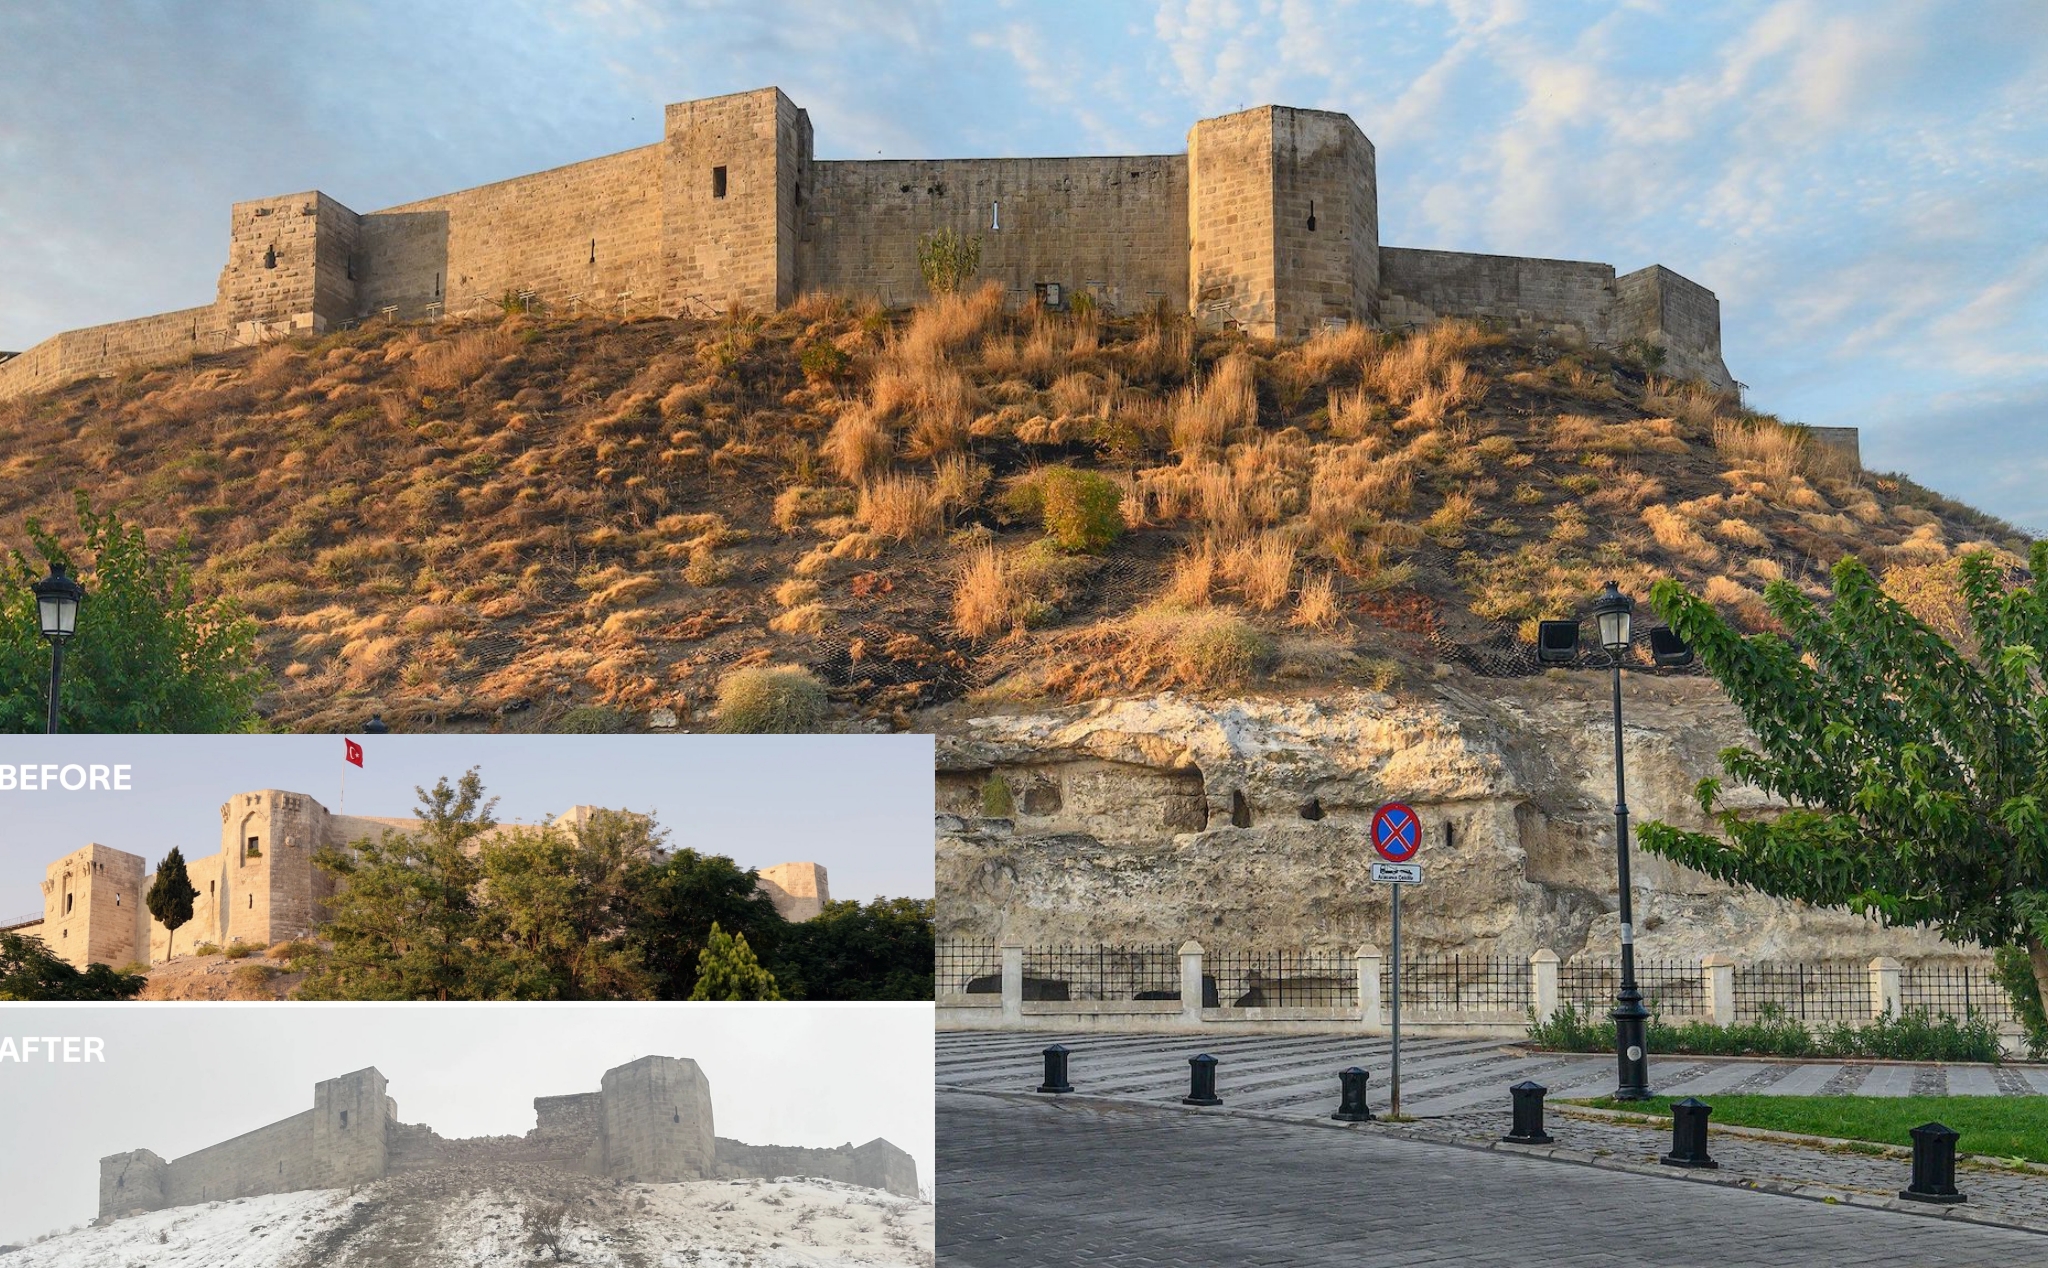 Trận động đất hôm qua đã phá huỷ nhiều công trình lịch sử hai ngàn năm tuổi ở Thổ Nhĩ Kỳ